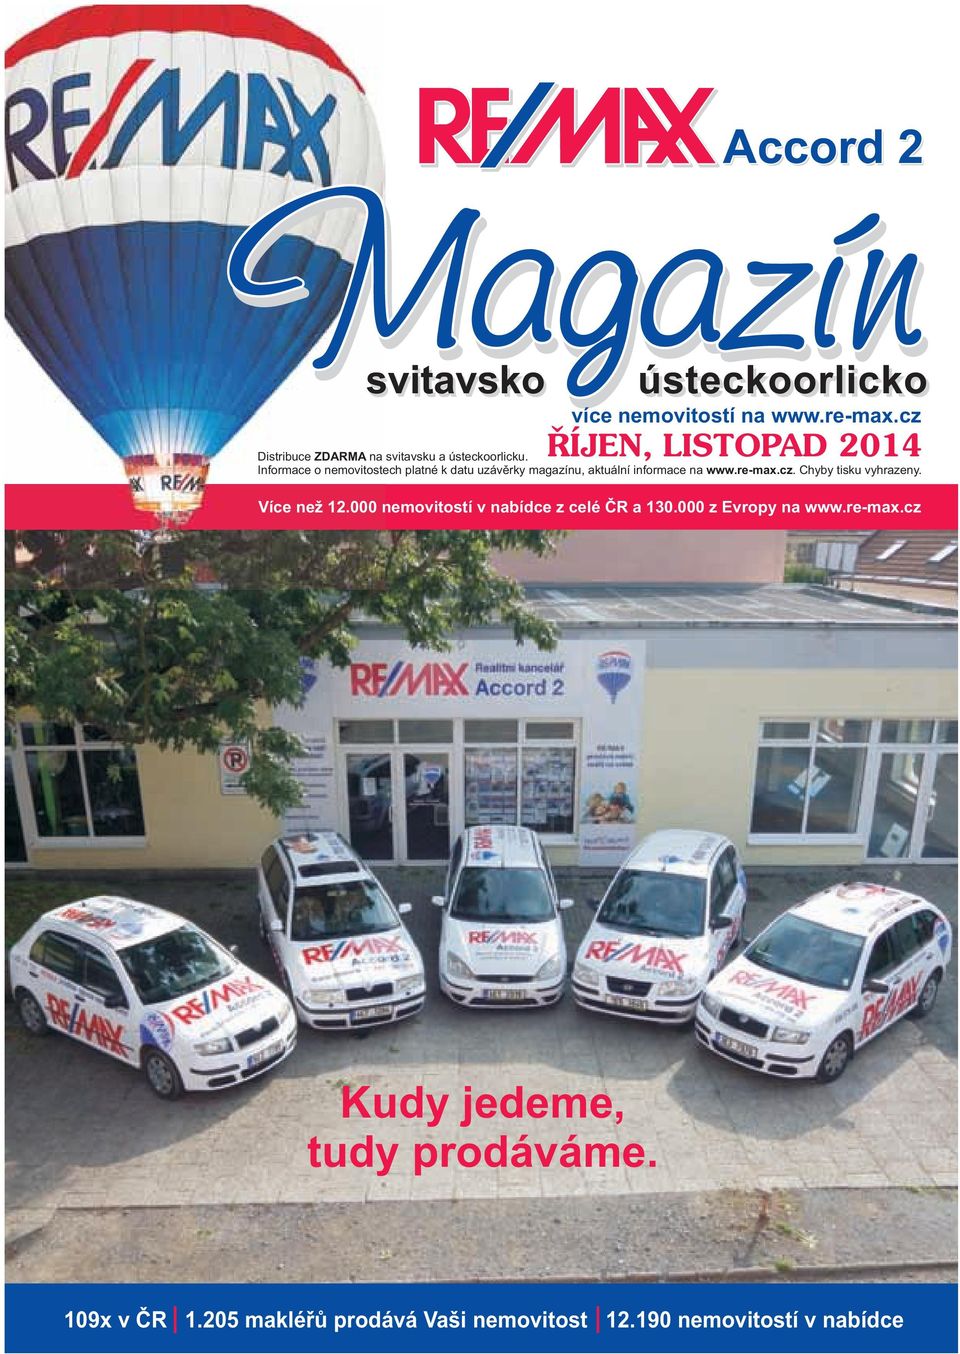 Informace o nemovitostech platné k datu uzávěrky magazínu, aktuální informace na www.re-max.cz.